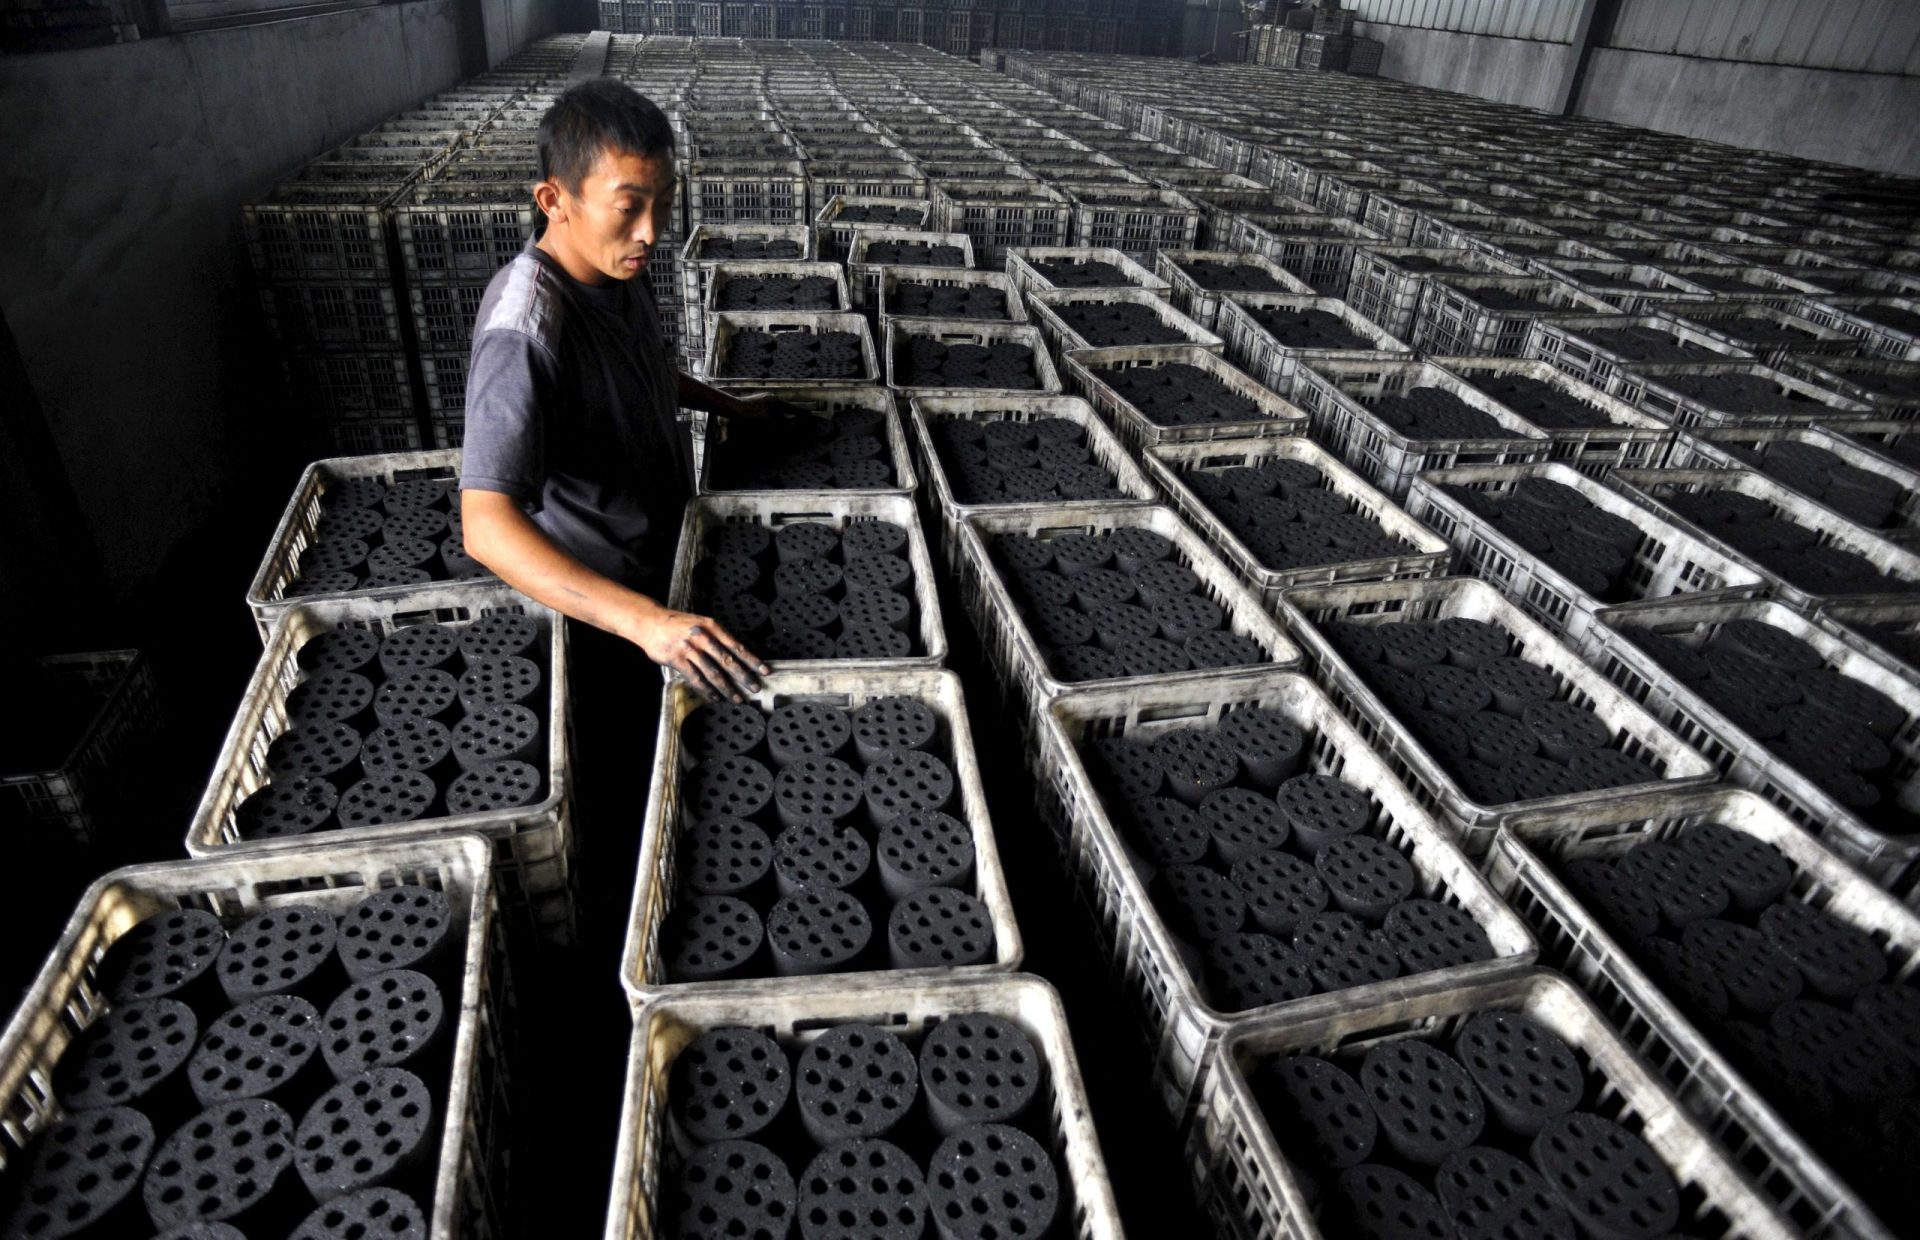 Un trabajador chino en un almacén de briquetas de carbón, la principal fuente de energía y combustible para la calefacción.